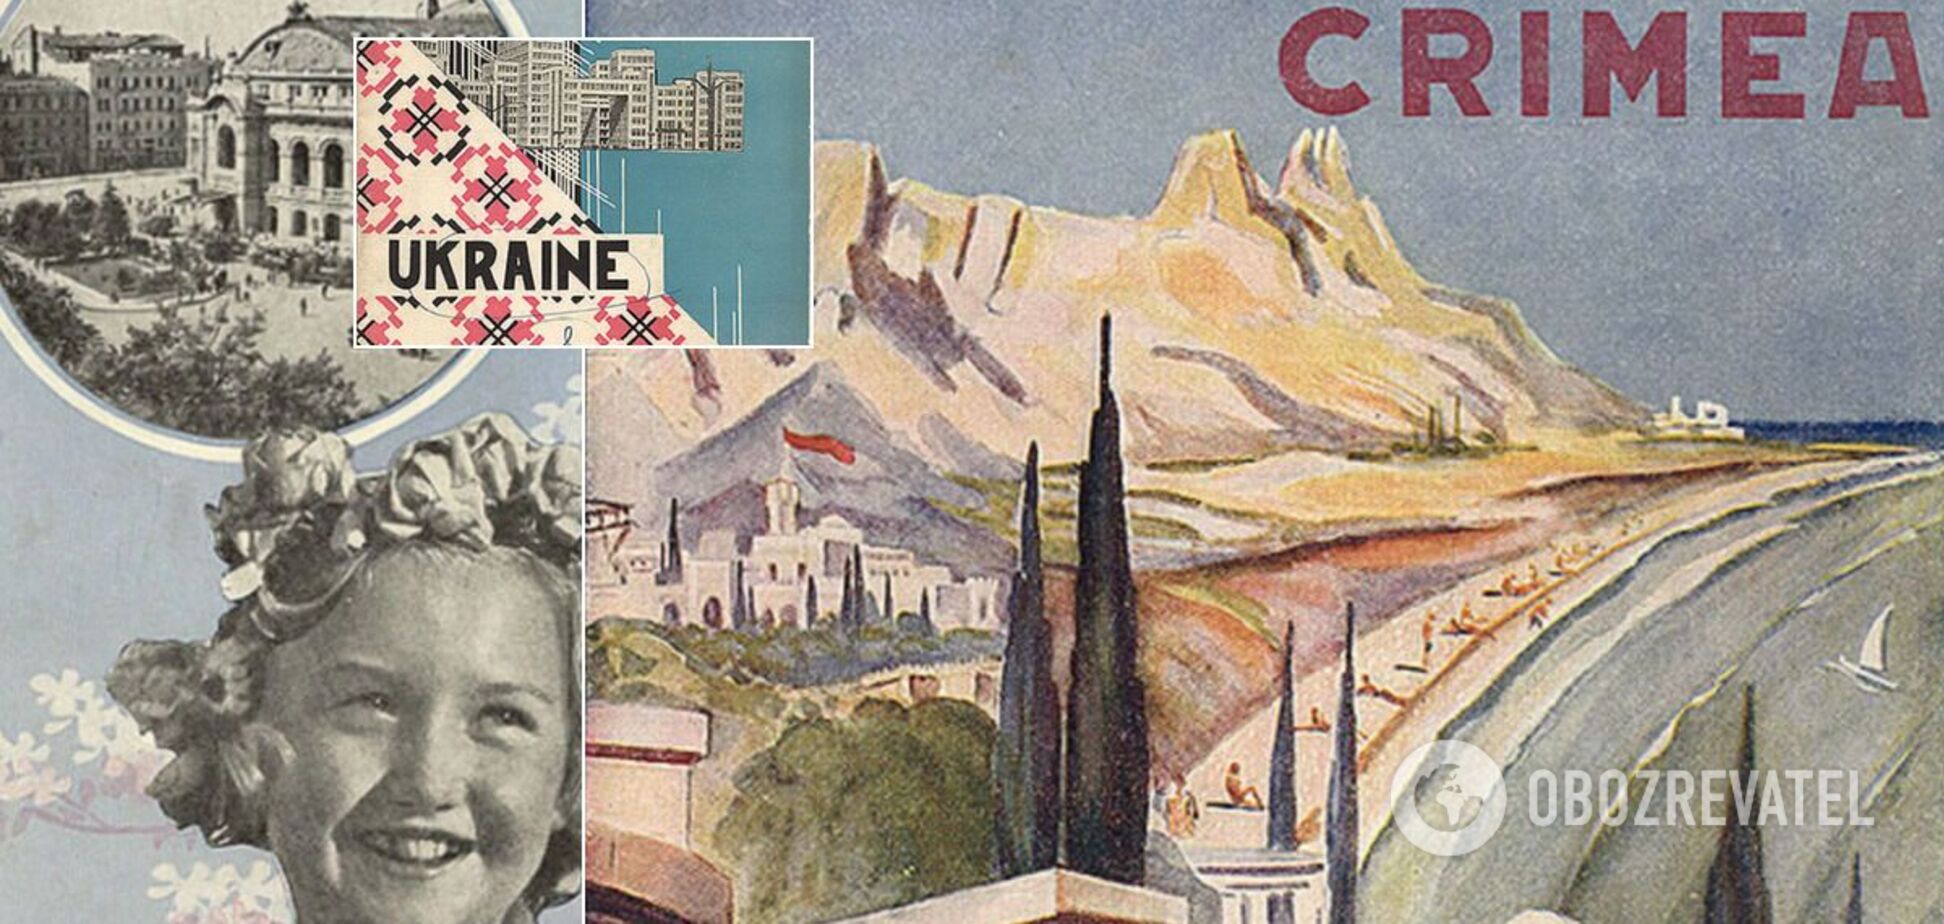 Туристические плакаты СССР 1930-х годов об Украине показали в сети